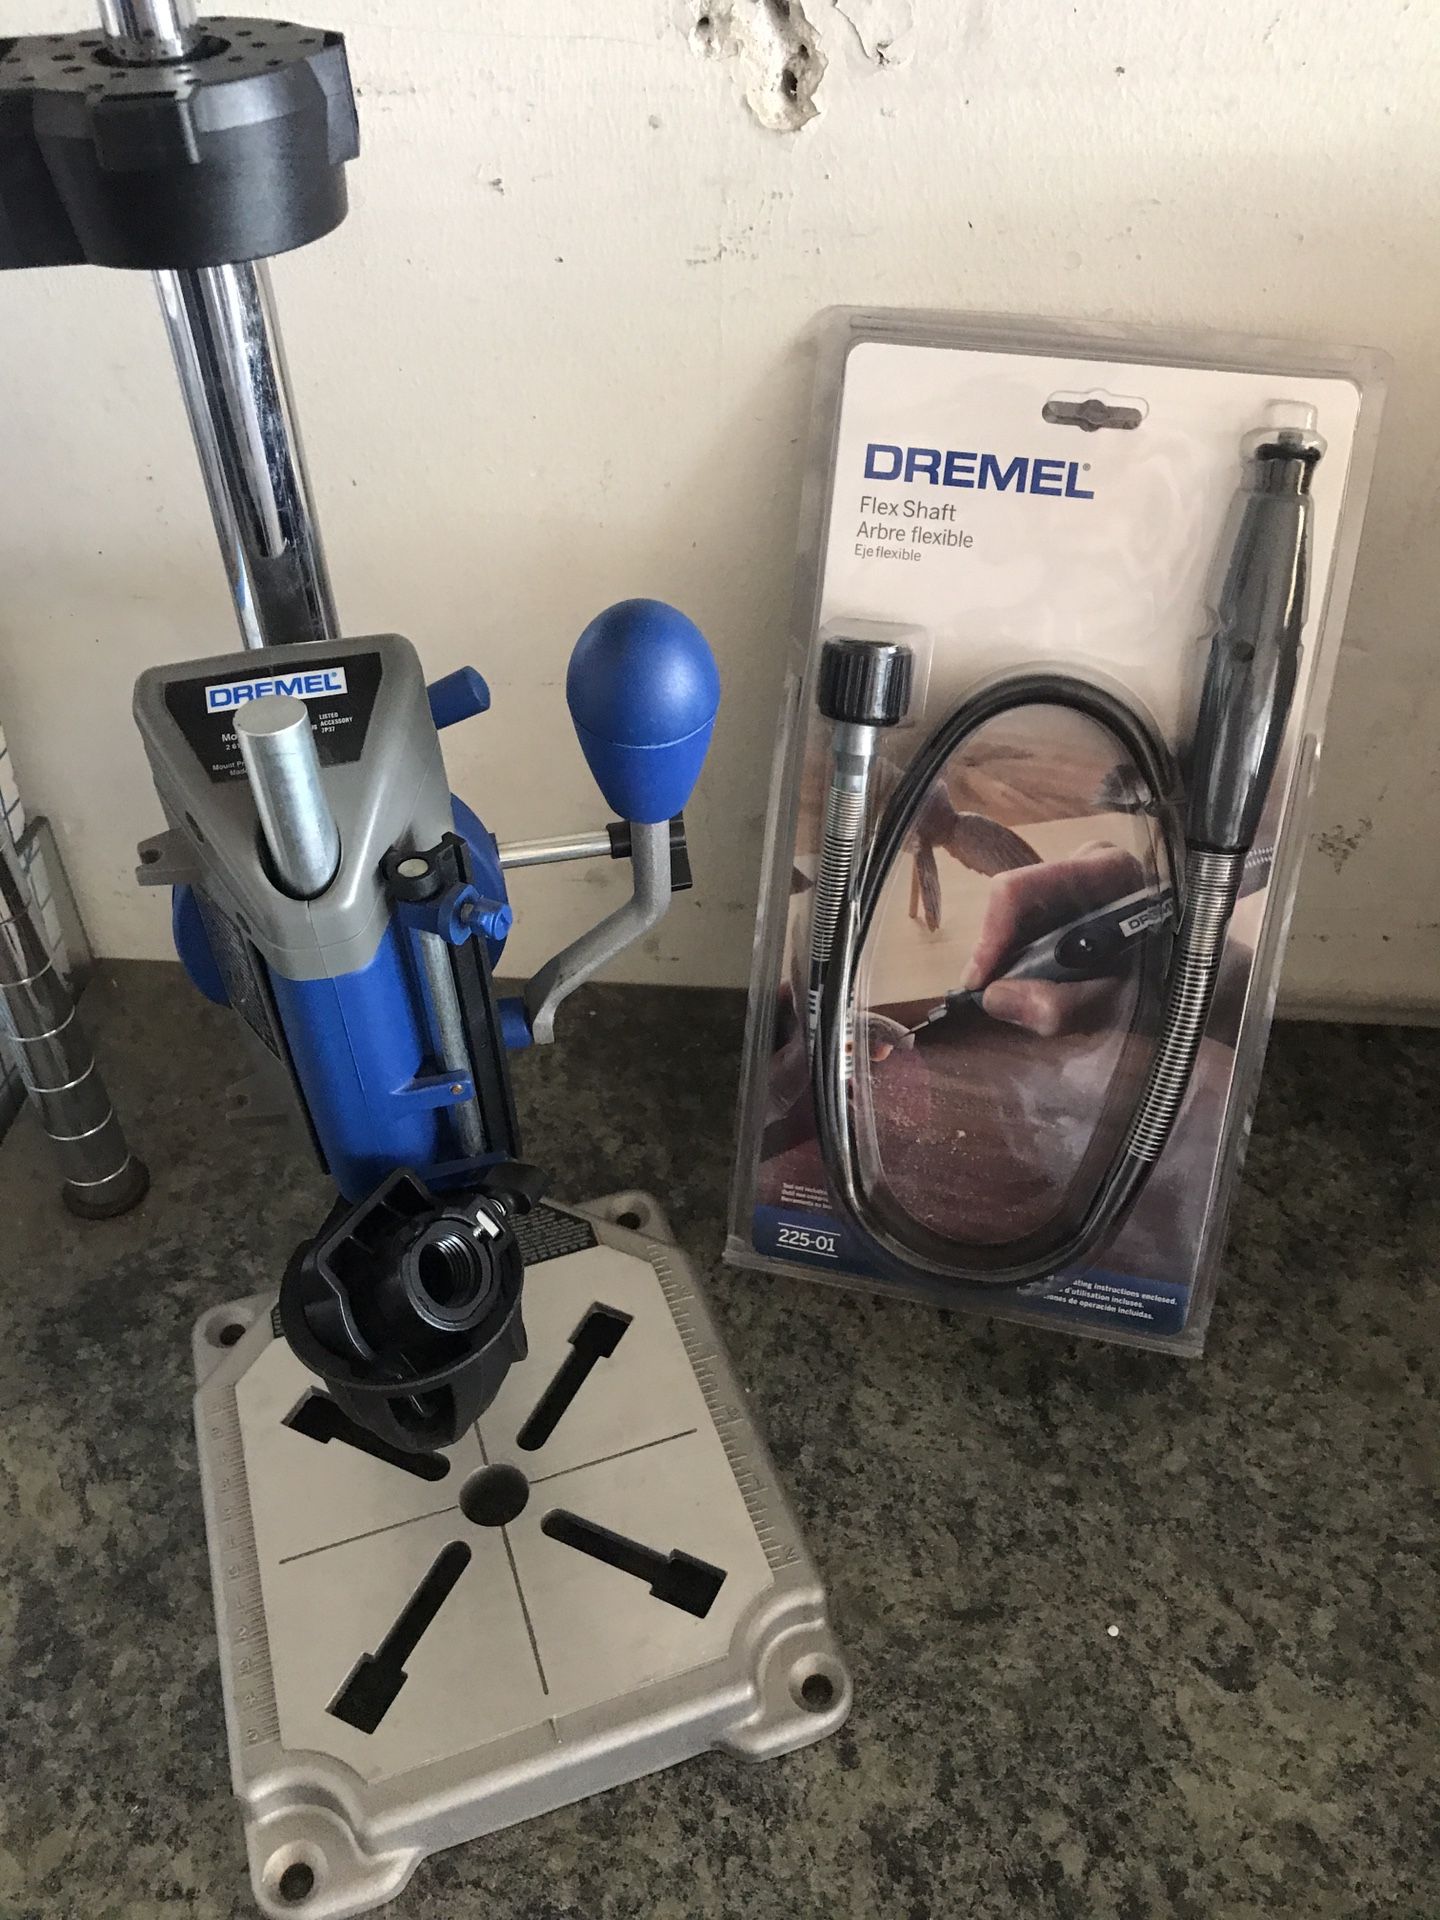 Dremel Tool Drill Press and Dremel Flex Shaft attachment